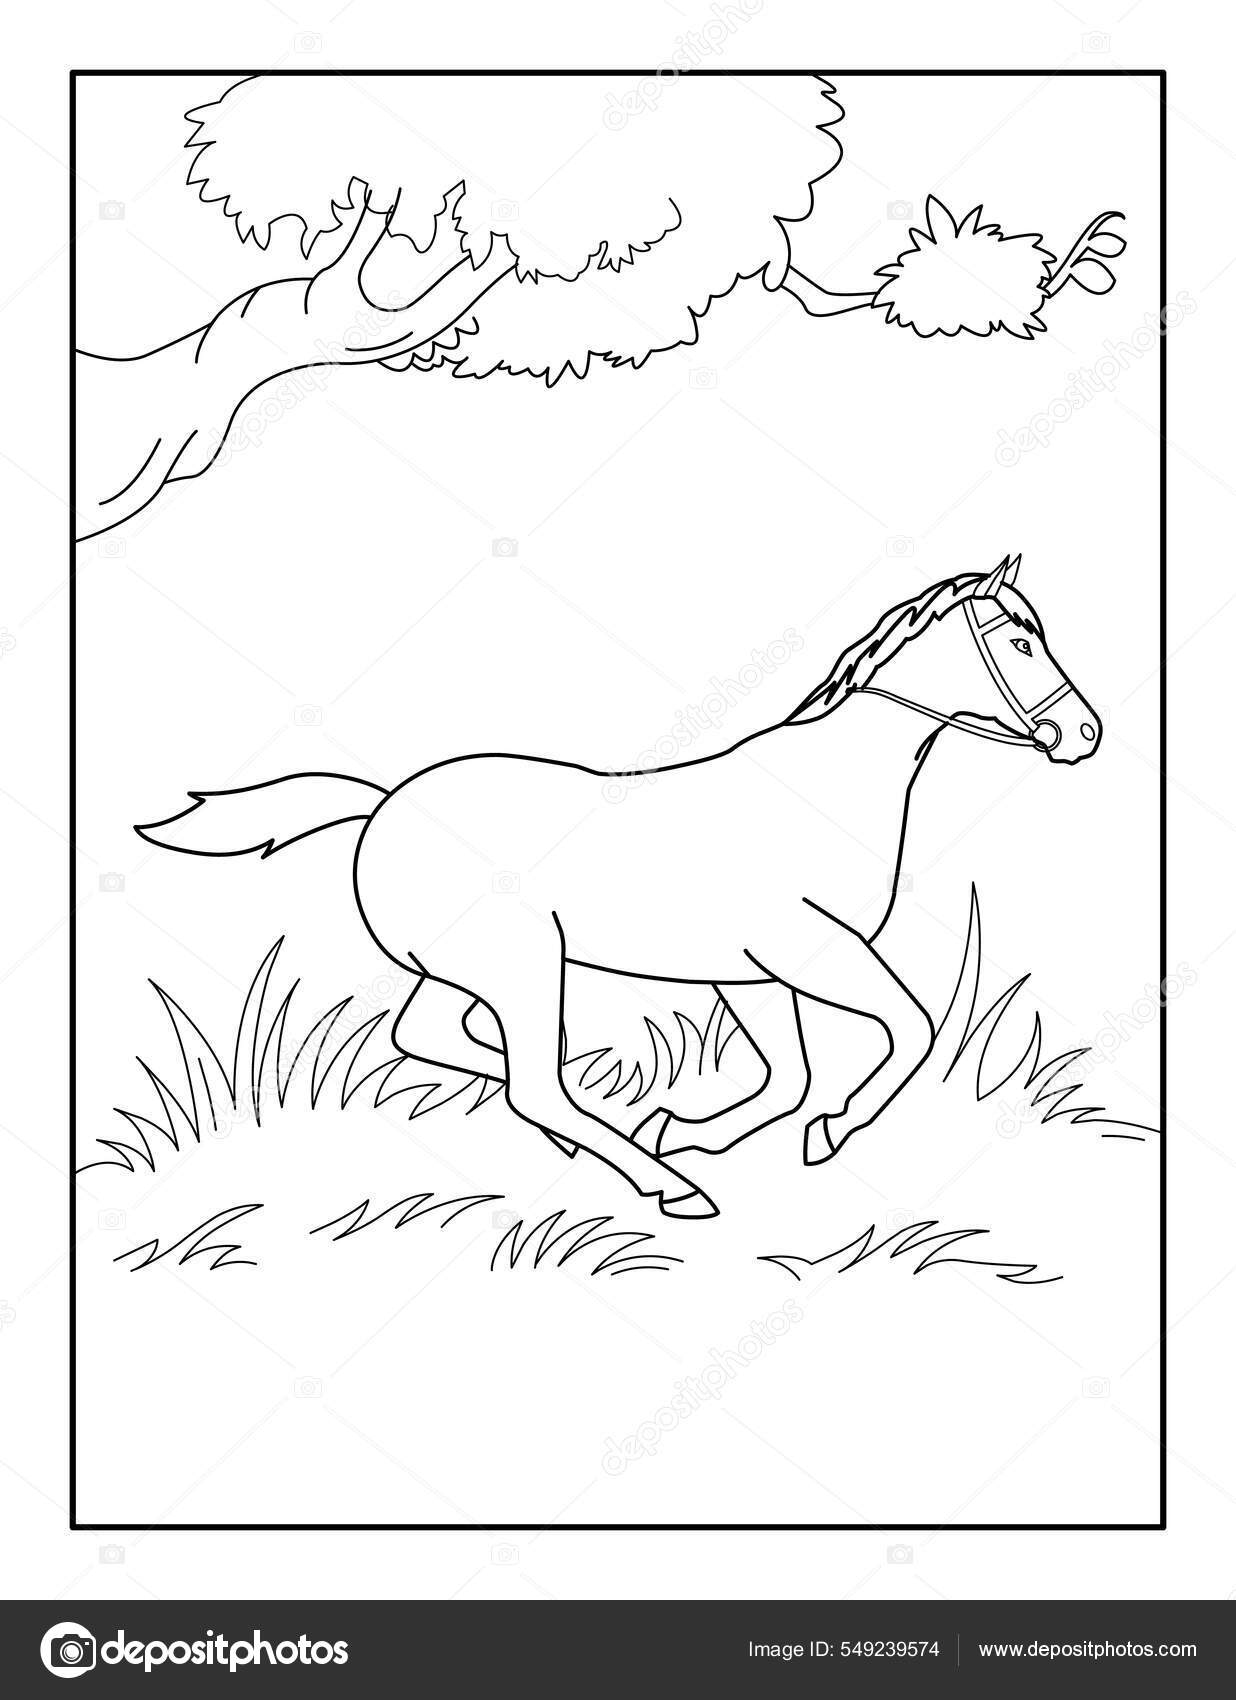 Livro para Colorir de Cavalos para Adultos 1